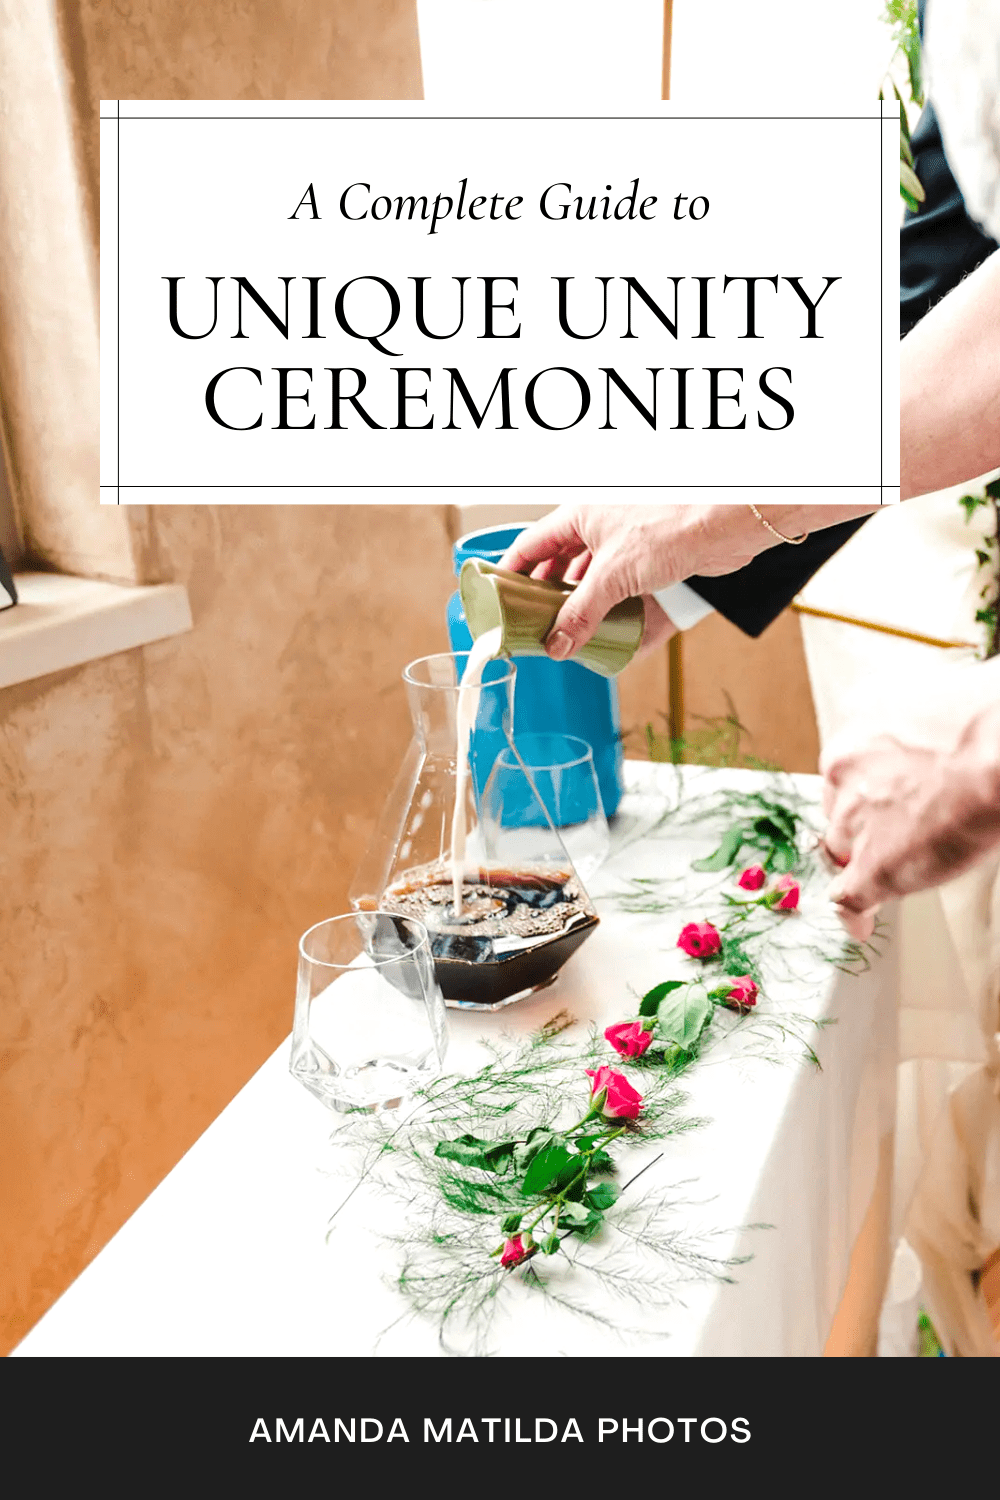 A Complete Guide to Unique Unity Ceremonies